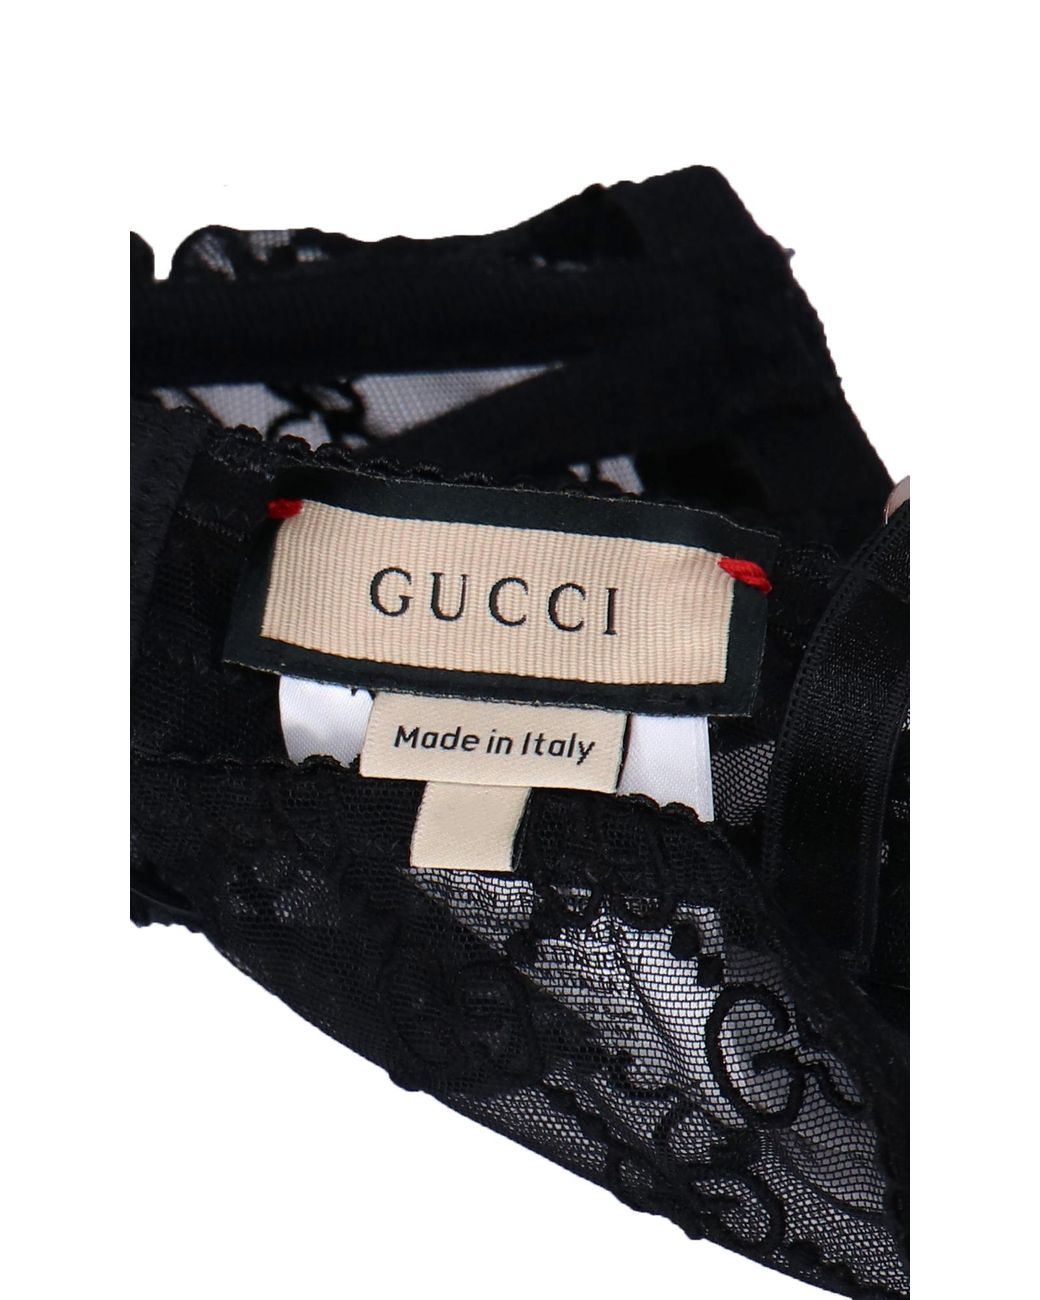 GG tulle lingerie set in black